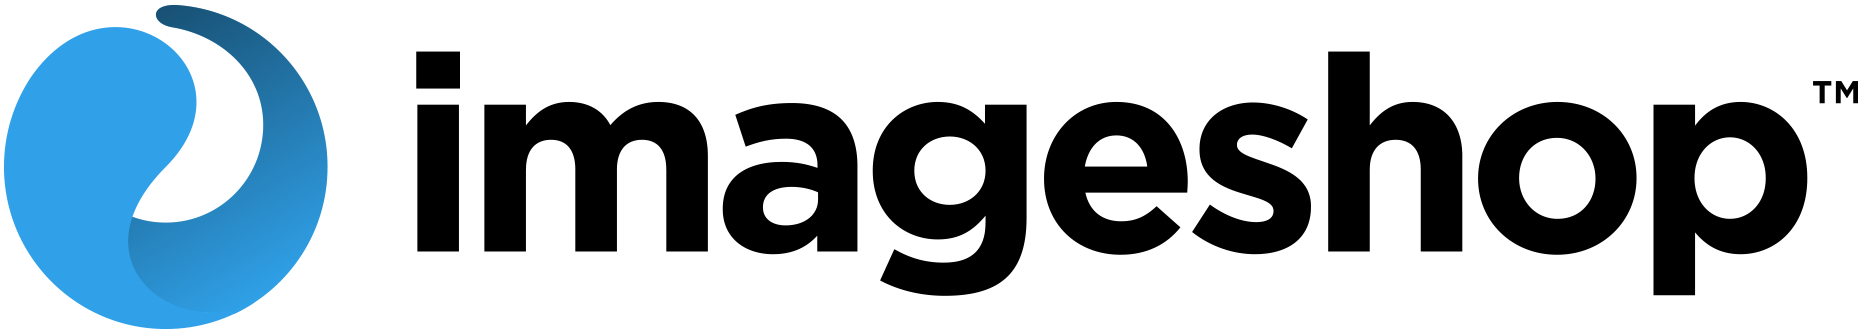 Imageshop logo